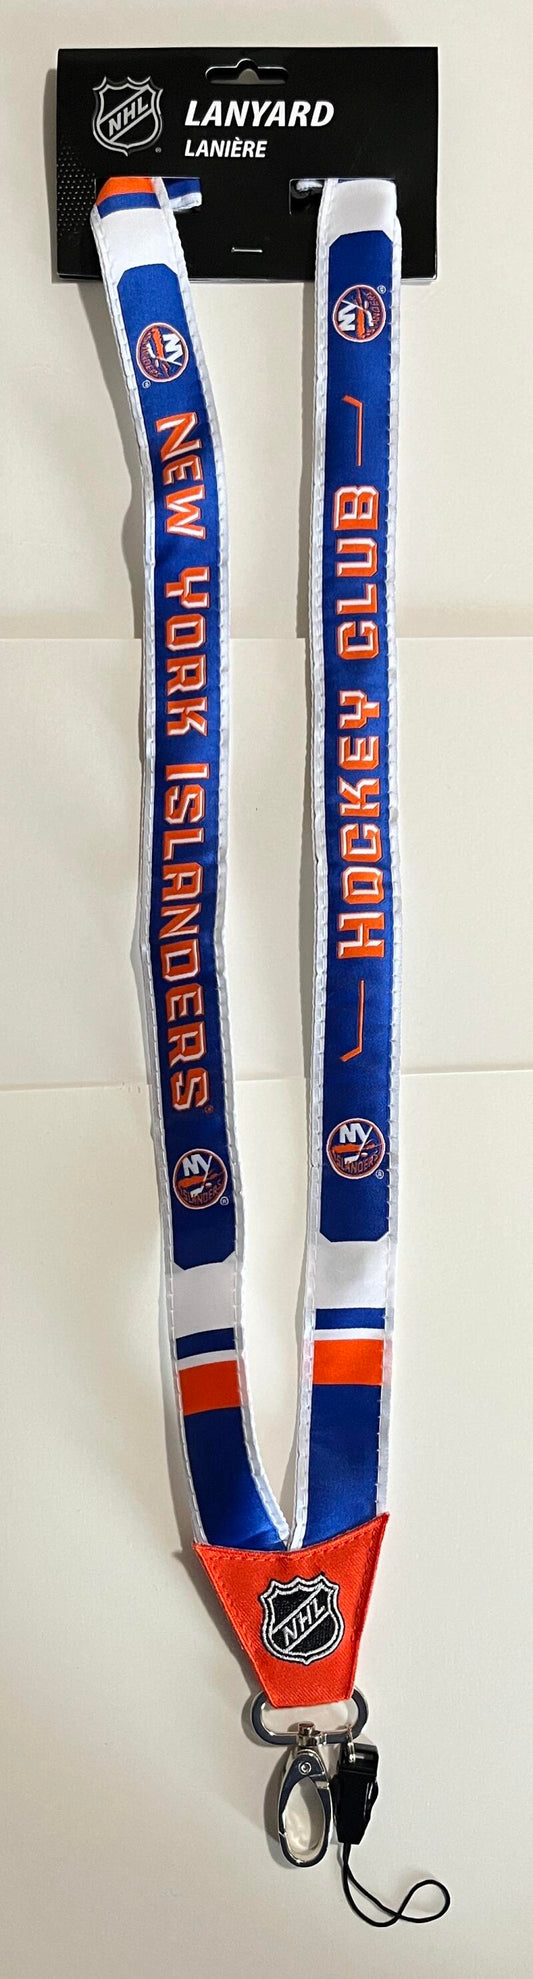 New York Islanders Woven Licensed NHL Hockey Lanyard Metal Clasp Image 1